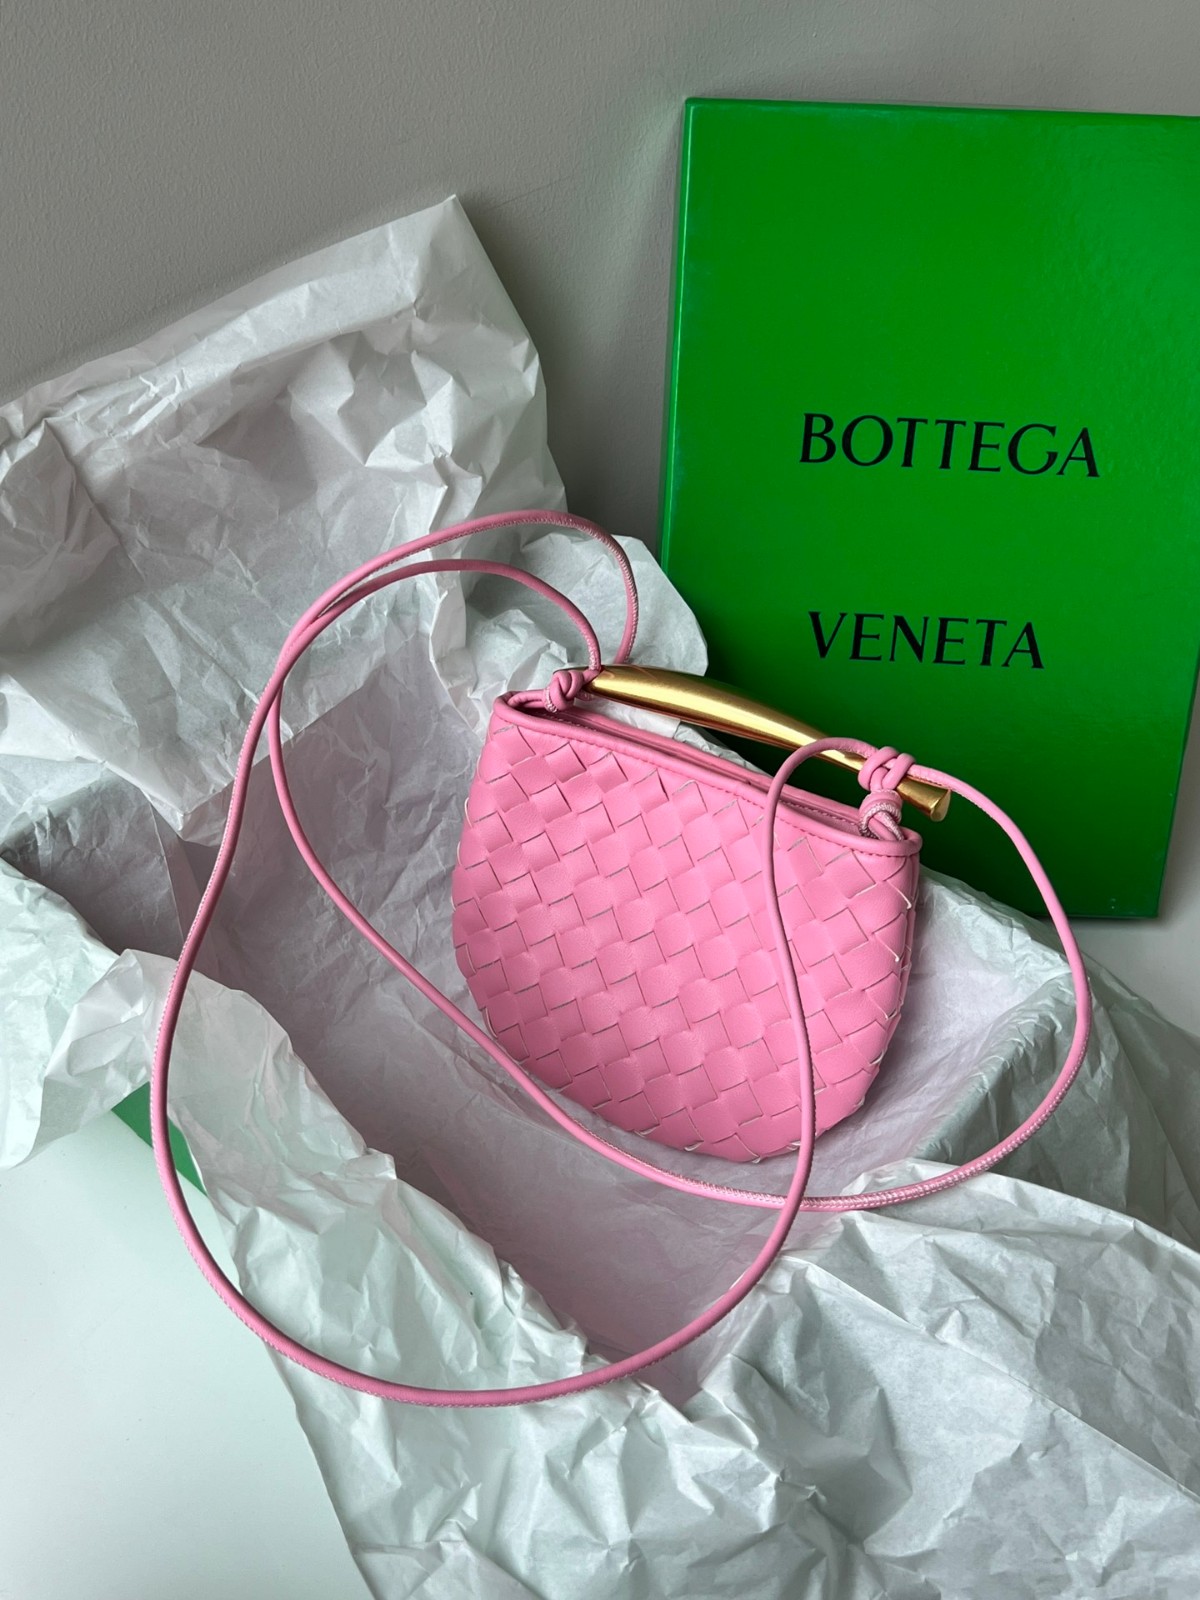 可愛い ボッテガ・ヴェネタ バッグ コピー 大人気 上品 ミニ サーディン ショルダーバッグ ピンク